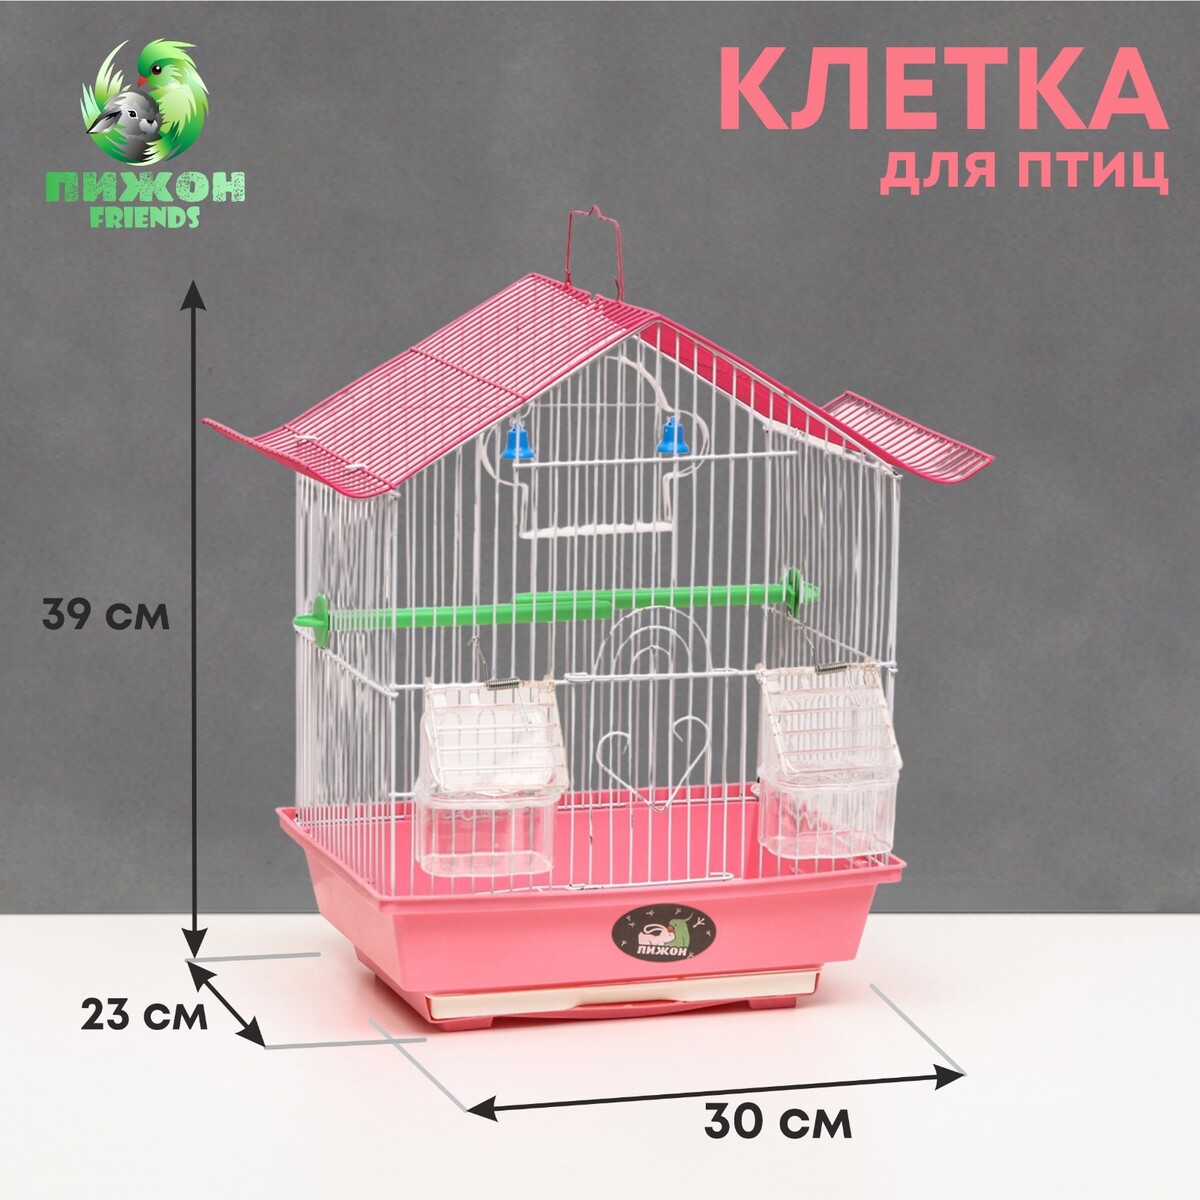 Клетка для птиц укомплектованная bd-1/1d, 30 х 23 х 39 см, розовая клетка для птиц овальная с кормушками 30 х 23 х 39 см синяя